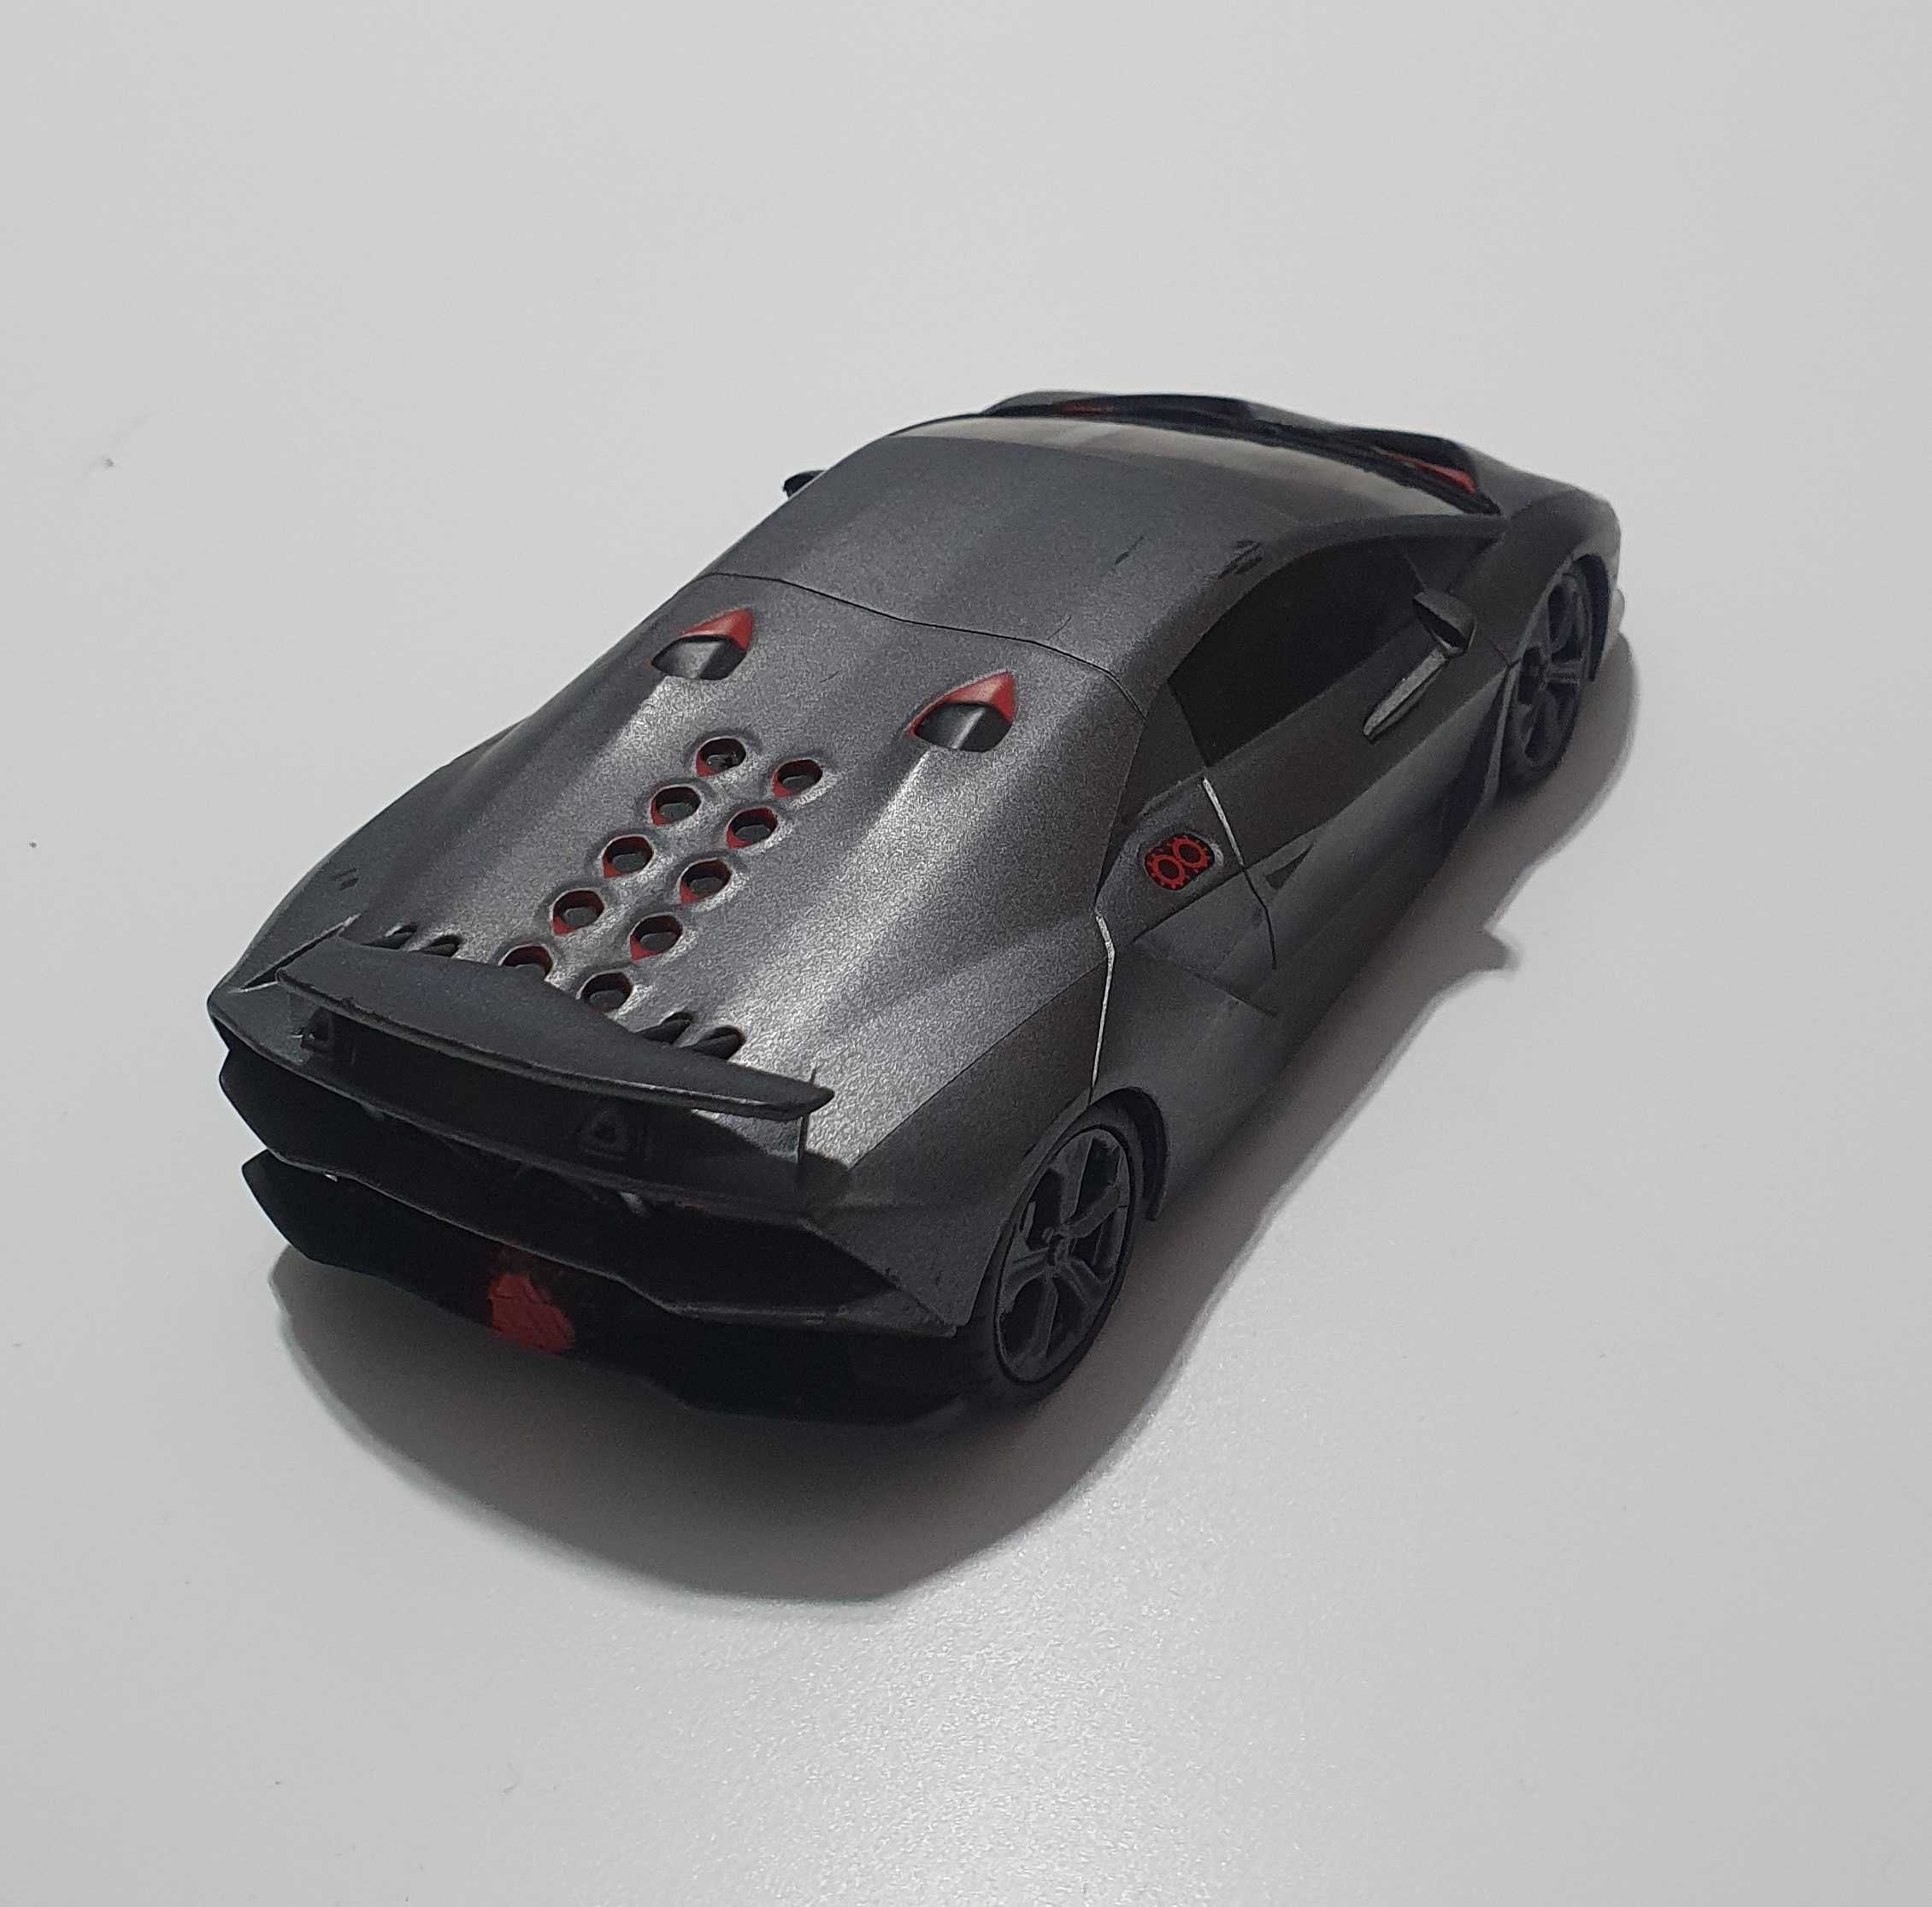 Masina jucarie pentru copii Lamborghini lungime 17 cm